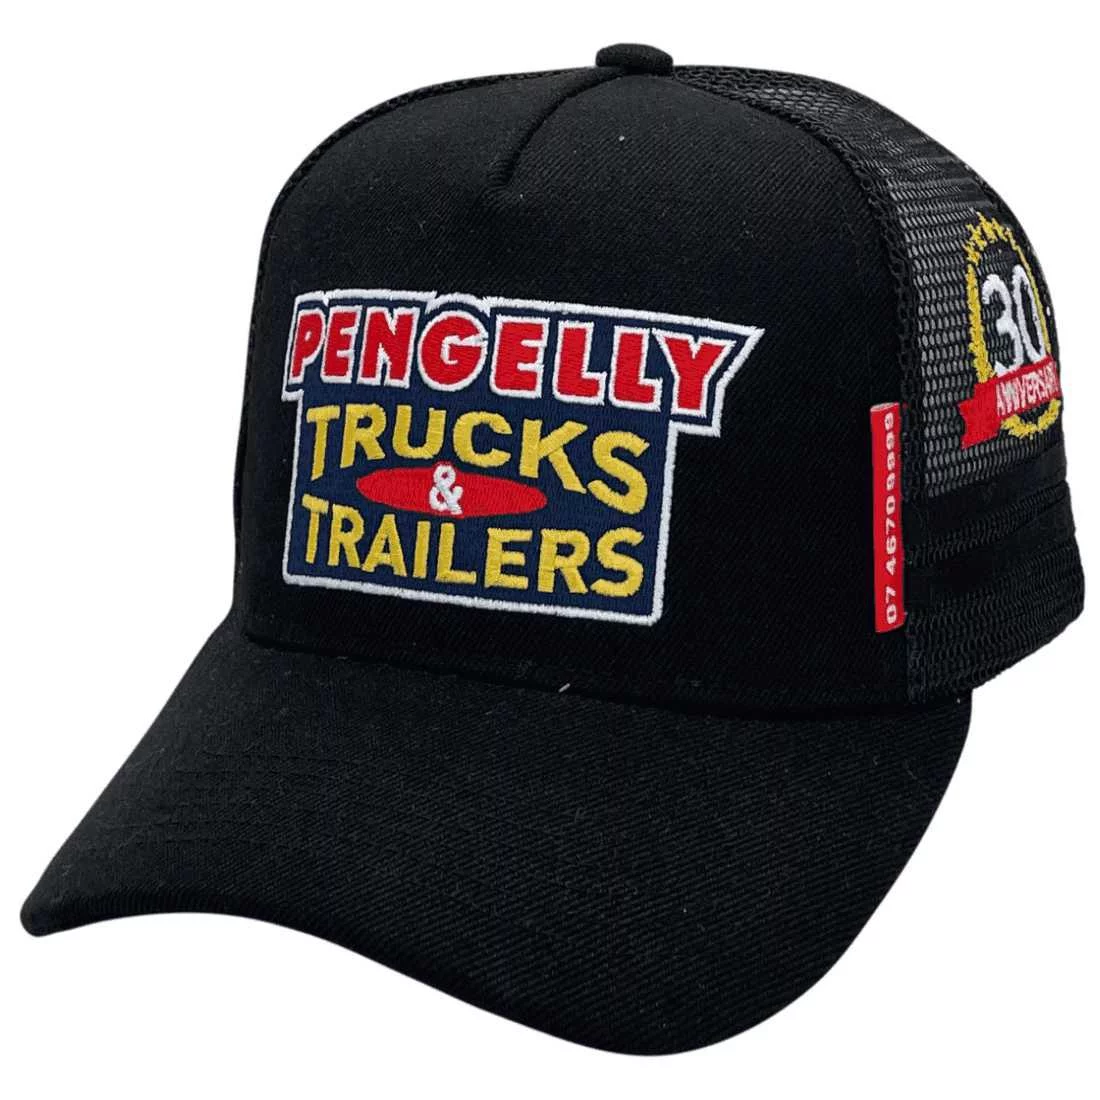 Pengelly Trucks & Trailers LP Basic Aussie Trucker Hats